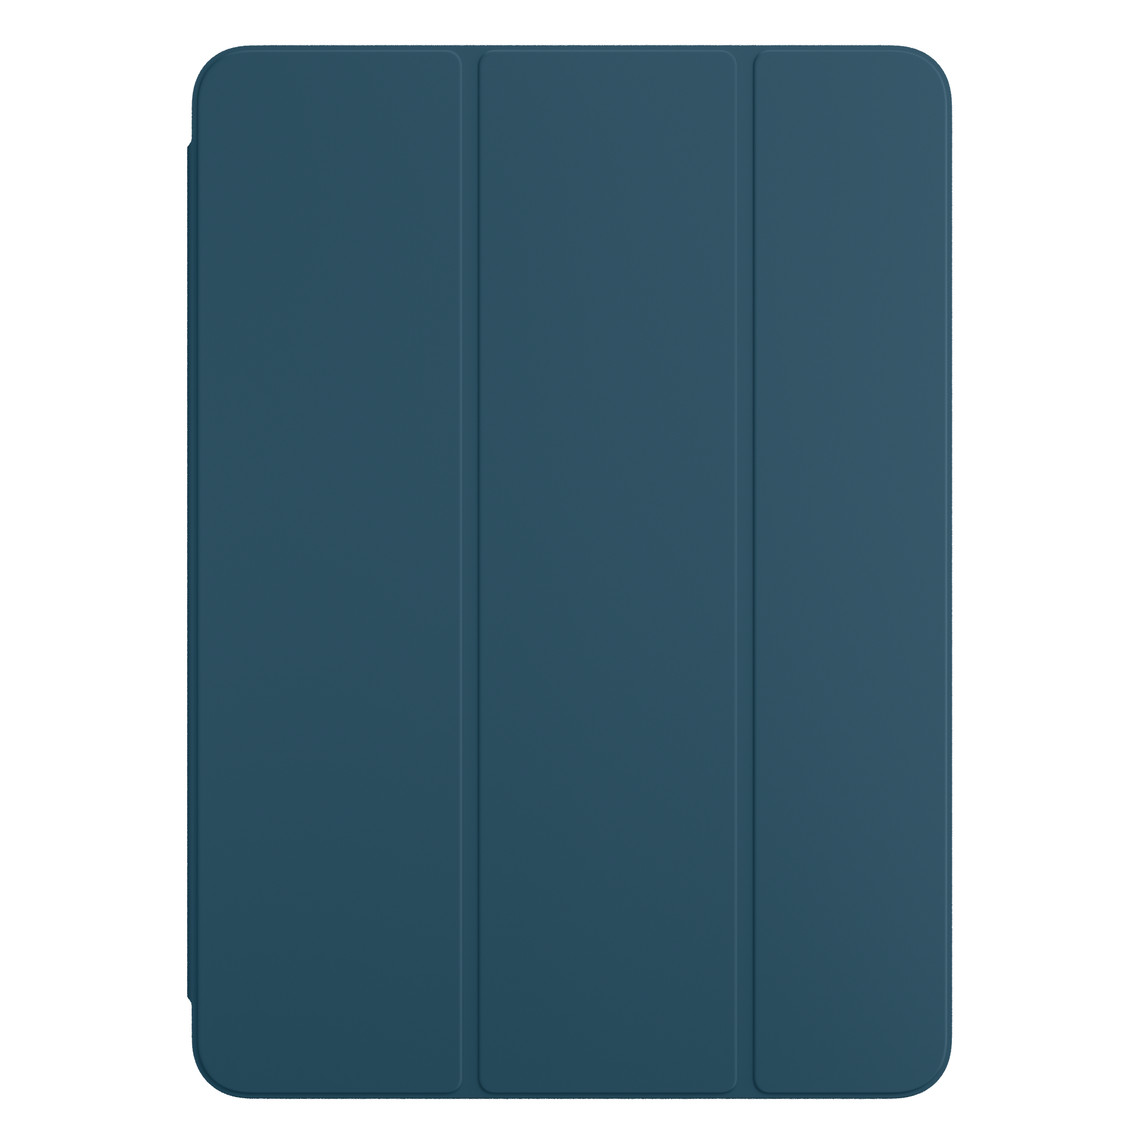 iPad Pro için Okyanus Mavisi Smart Folio’nun önden görünümü.